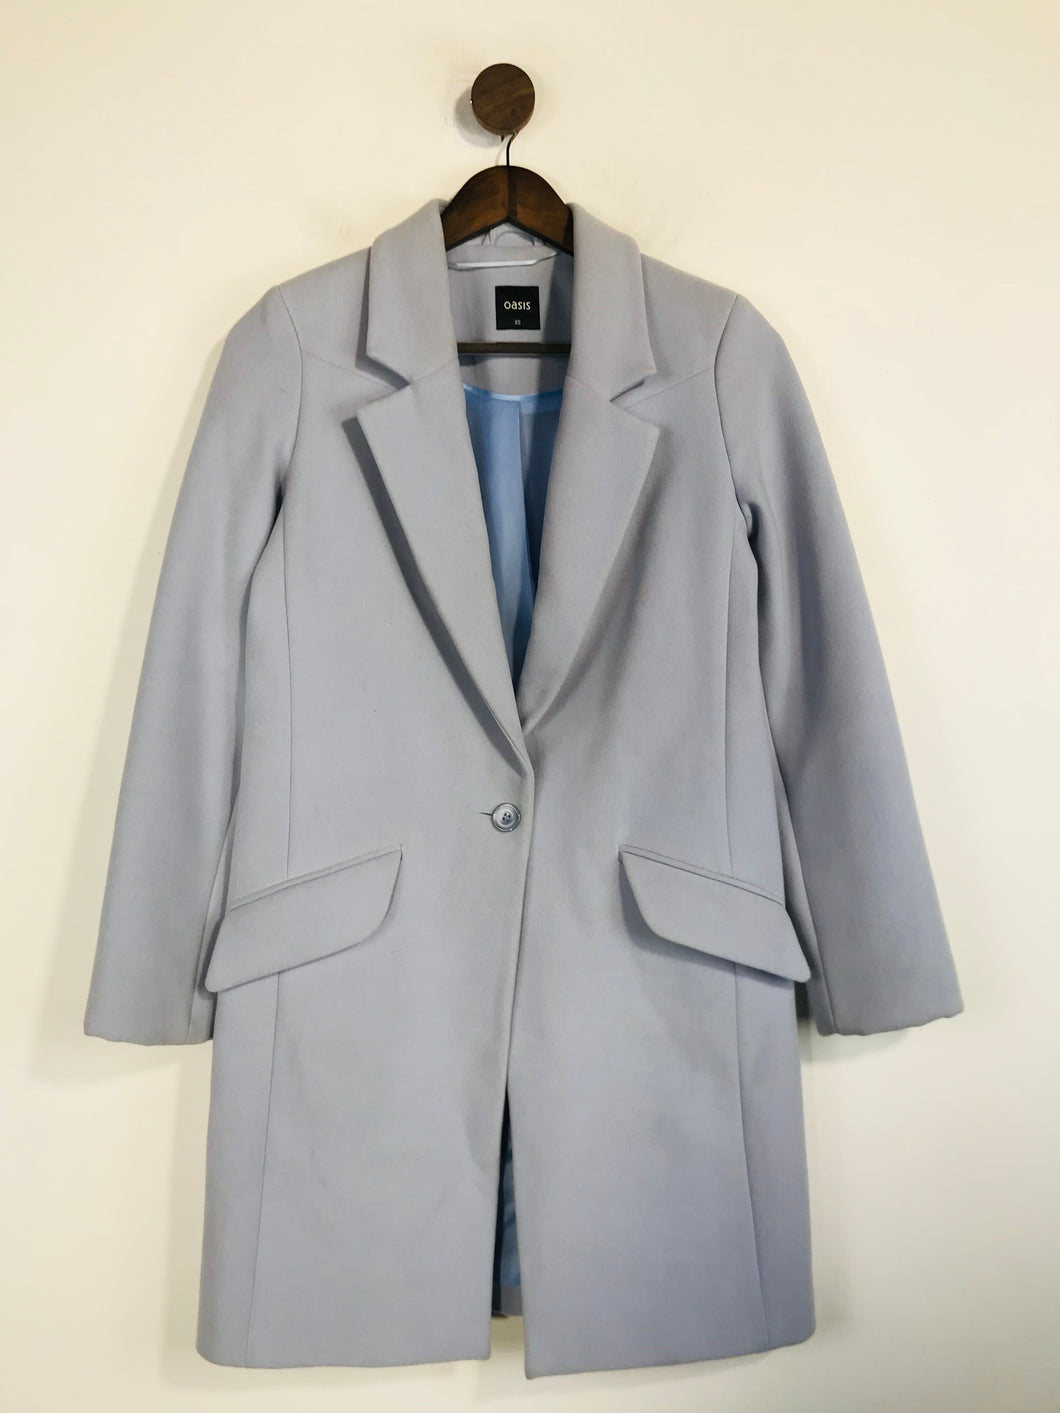 Oasis Women's Overcoat Coat | XS UK6-8 | Purple